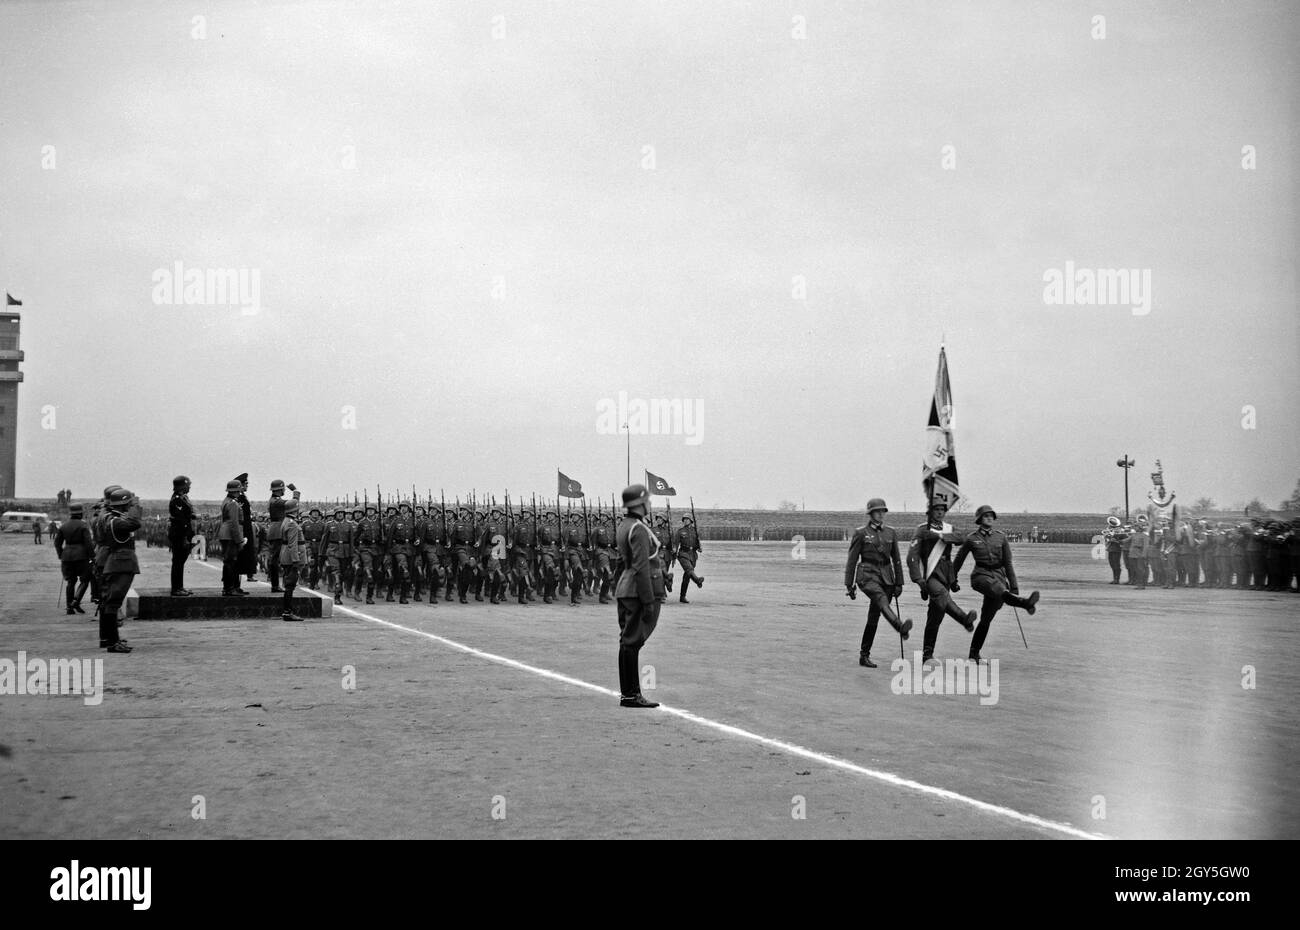 Militärparade im Sokol Stadion in Prag, anlässlich der Geburtstagsfeier von Adolf Hitler, 1930er Jahre. Stock Photo